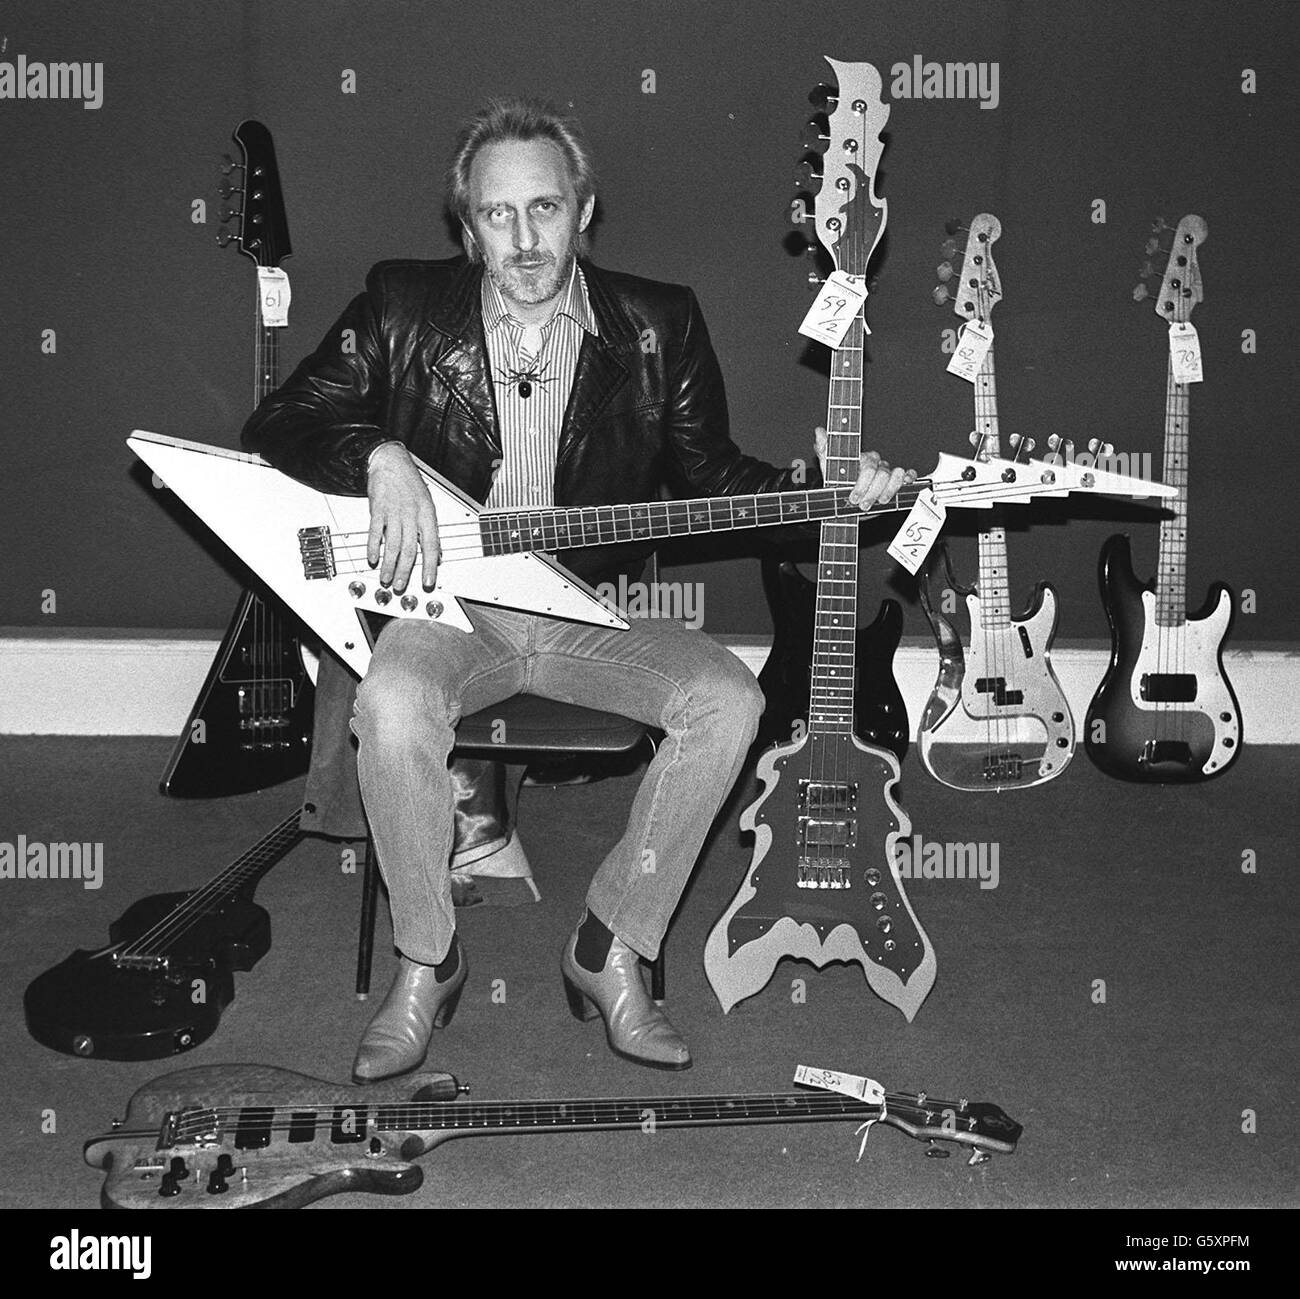 John Entwistle, bajista del grupo de rock The Who, muestra algunas de sus guitarras antes de una venta de objetos de rock, en Sotheby's, Londres: 27/06/02: El bajista John Entwistle murió en las Vegas en la víspera de la gira estadounidense de la banda. *..., confirmó una portavoz de la oficina de los coroneros del condado de Clark en las Vegas. Foto de stock